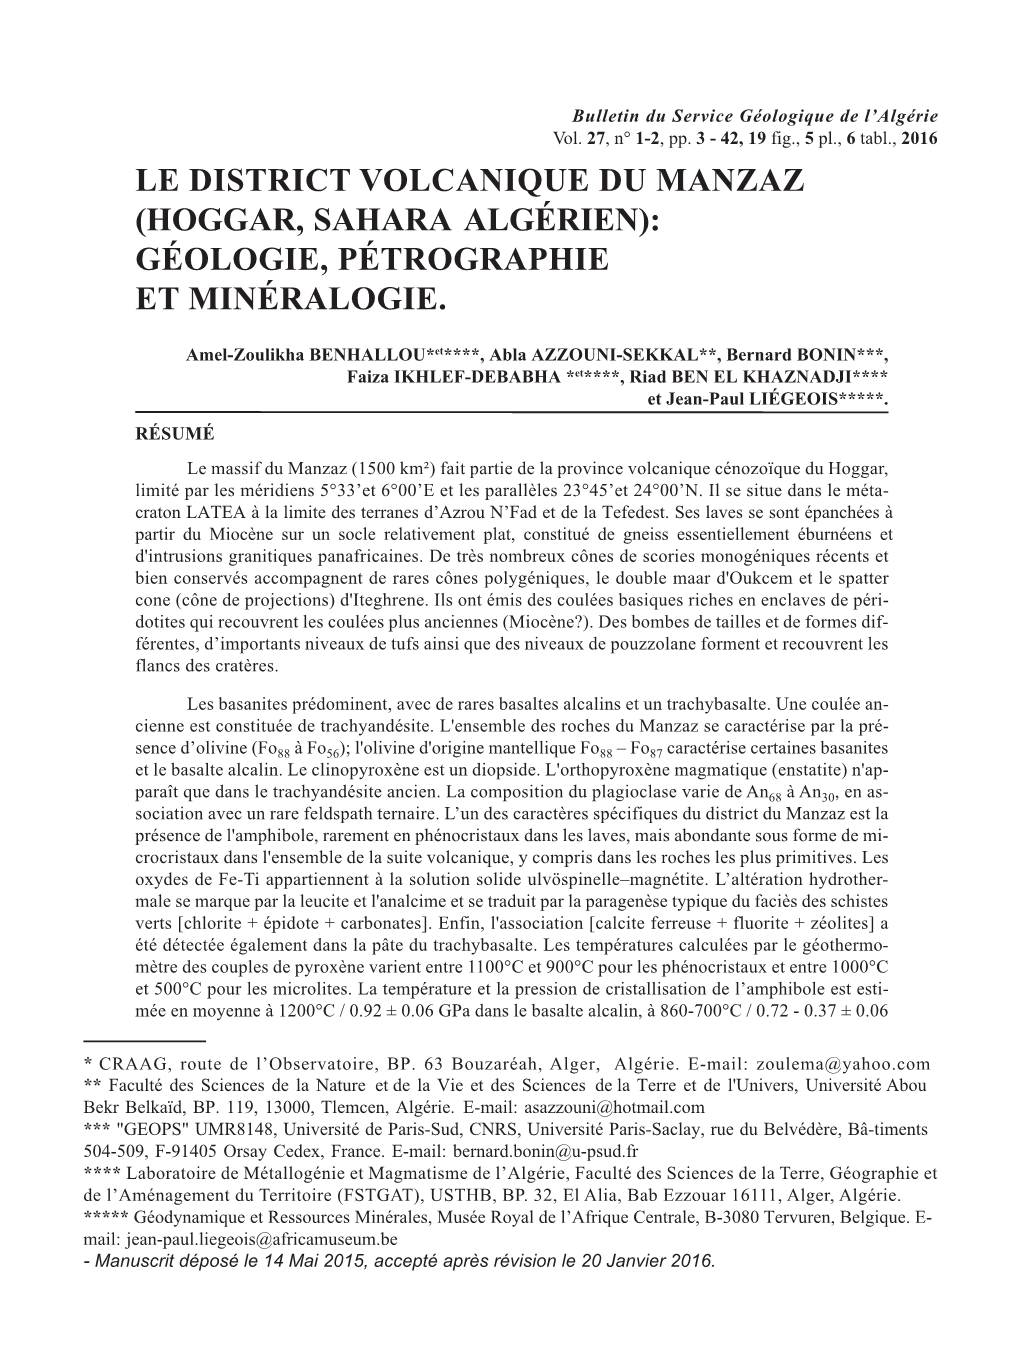 Le District Volcanique Du Manzaz (Hoggar, Sahara Algérien): Géologie, Pétrographie Et Minéralogie